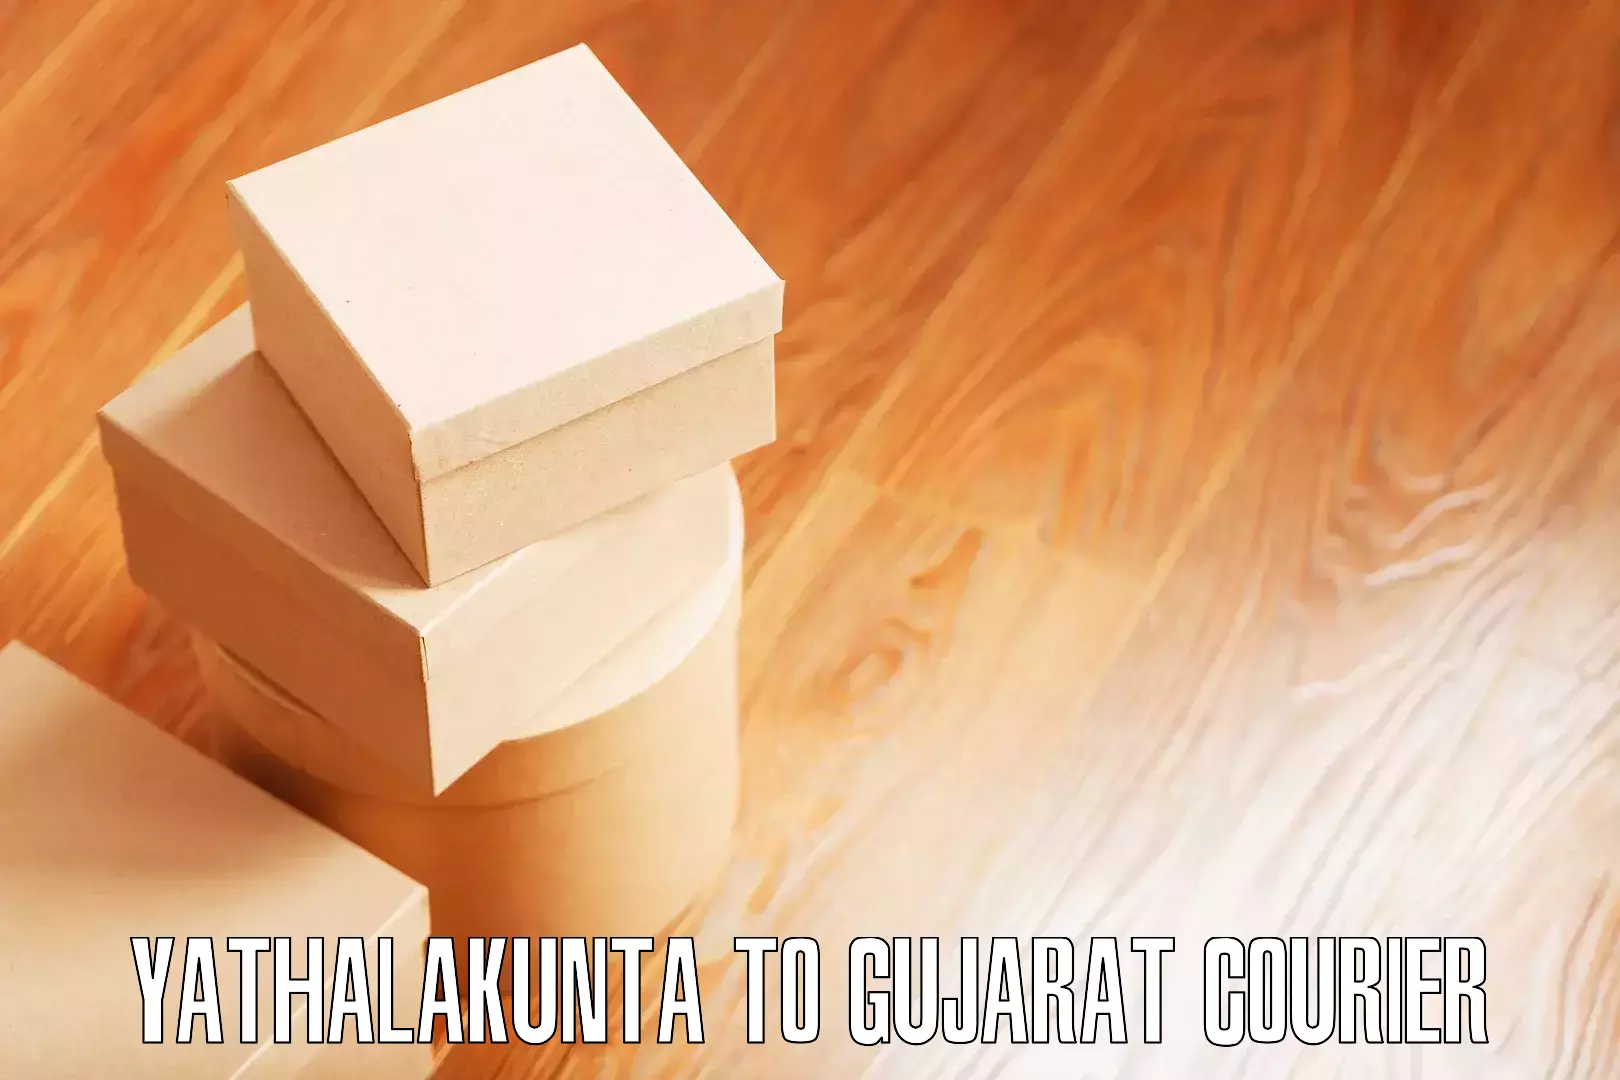 Expert furniture transport Yathalakunta to Prantij